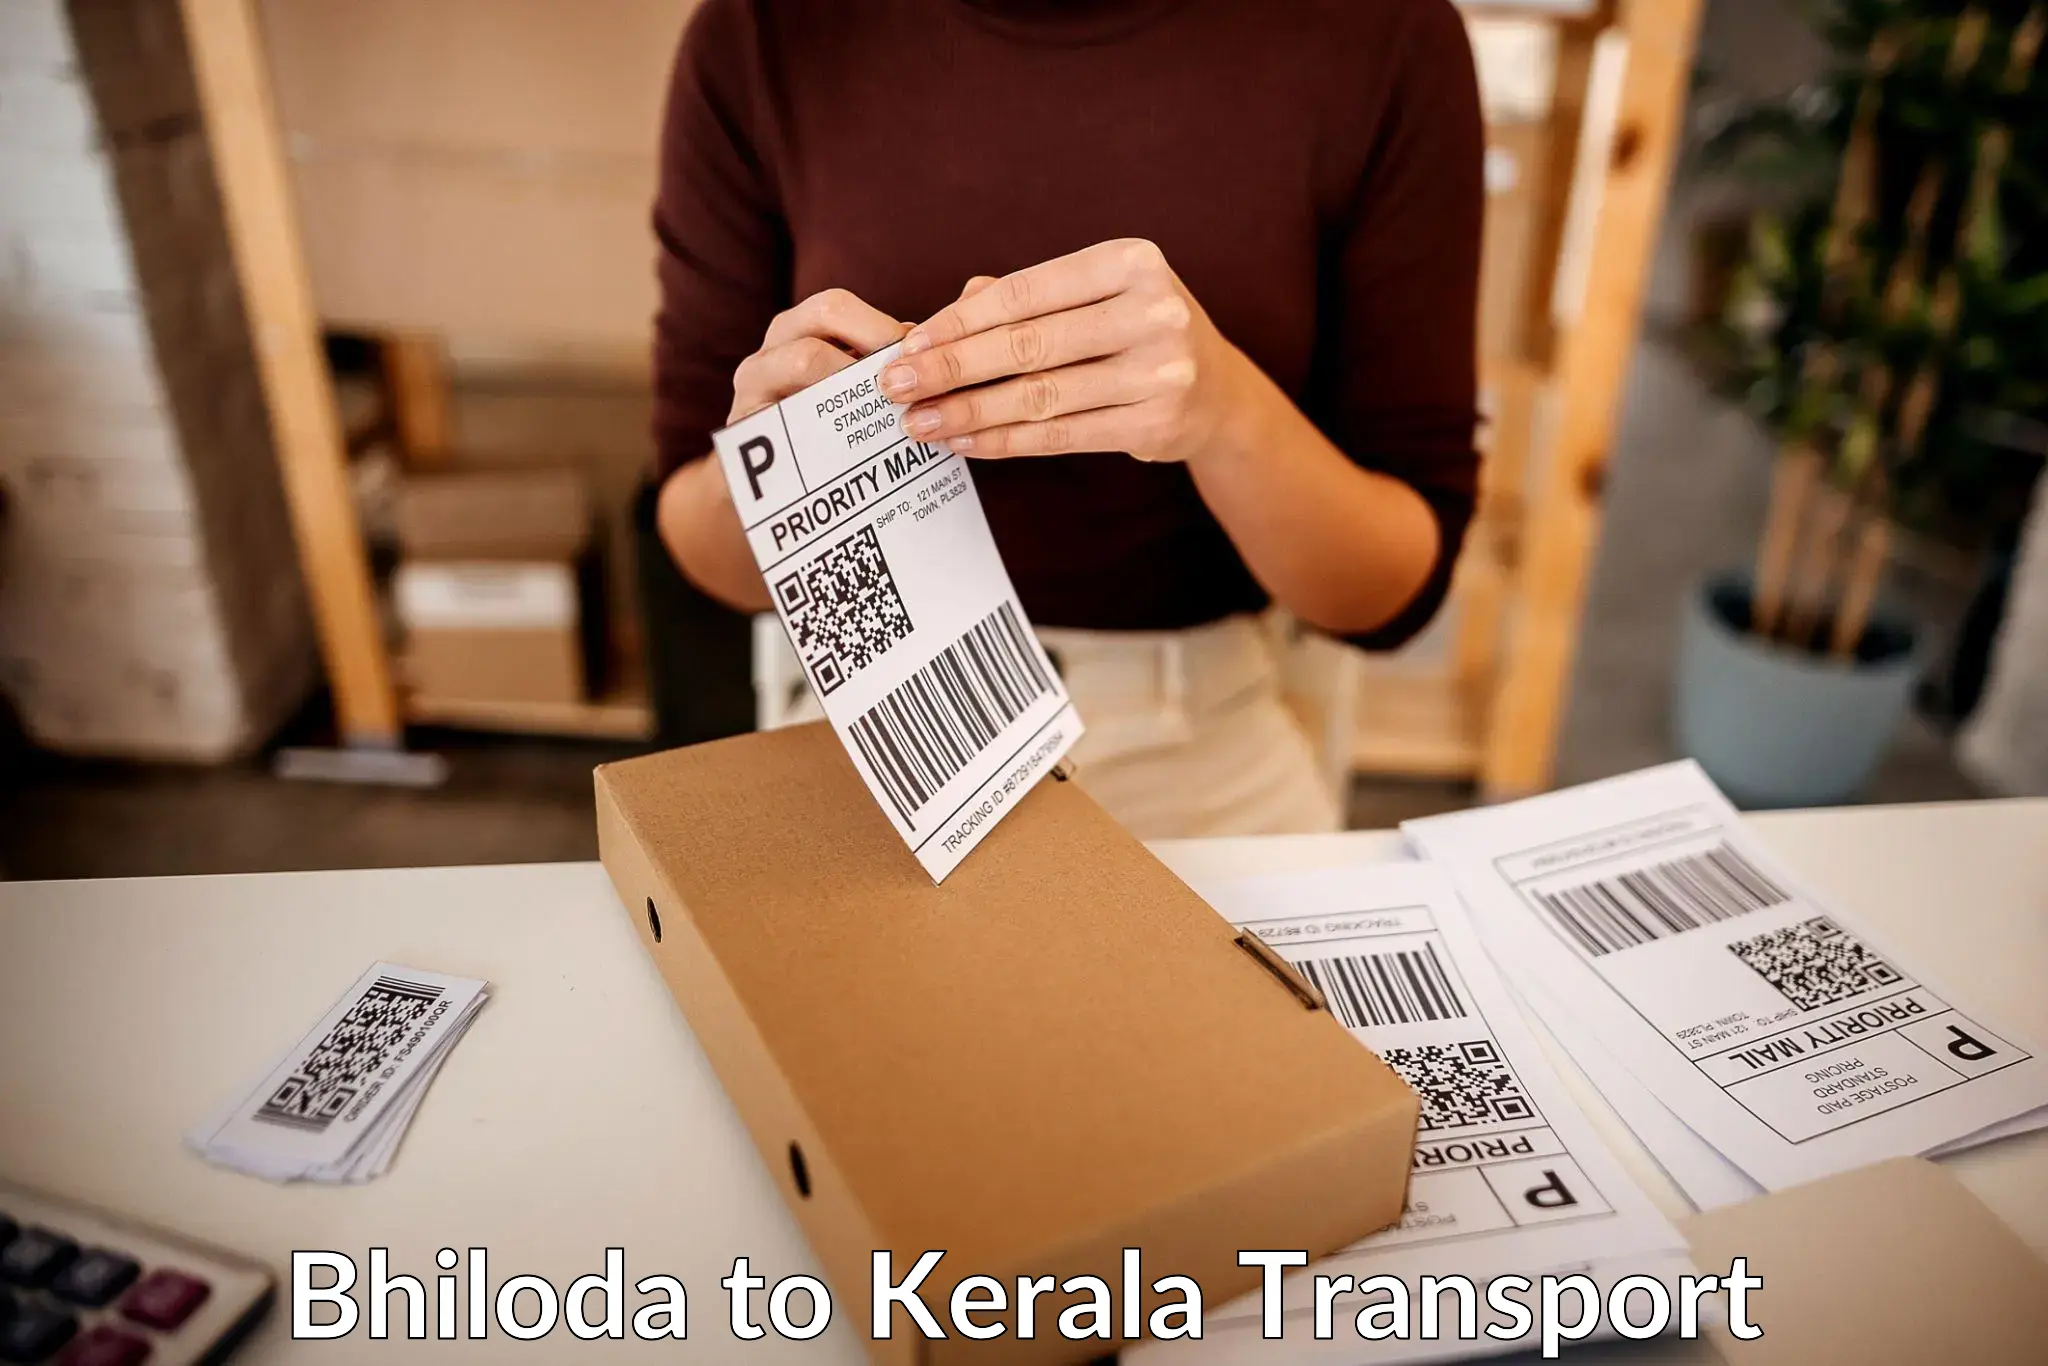 Road transport online services Bhiloda to Pazhayannur